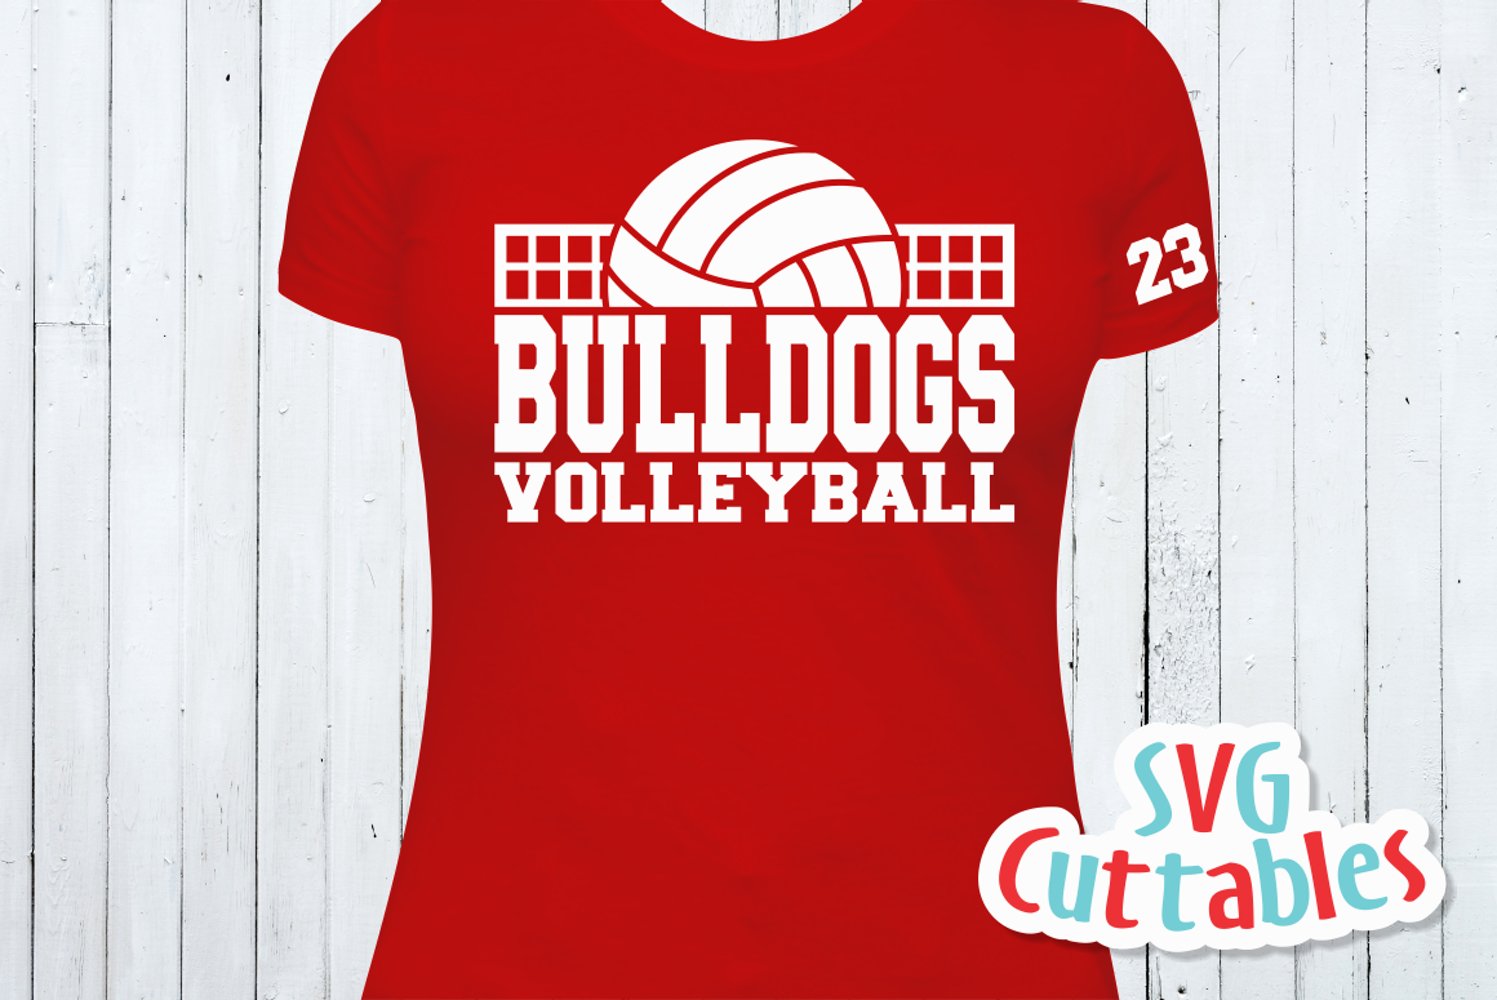 Volleyball t-shirt design.